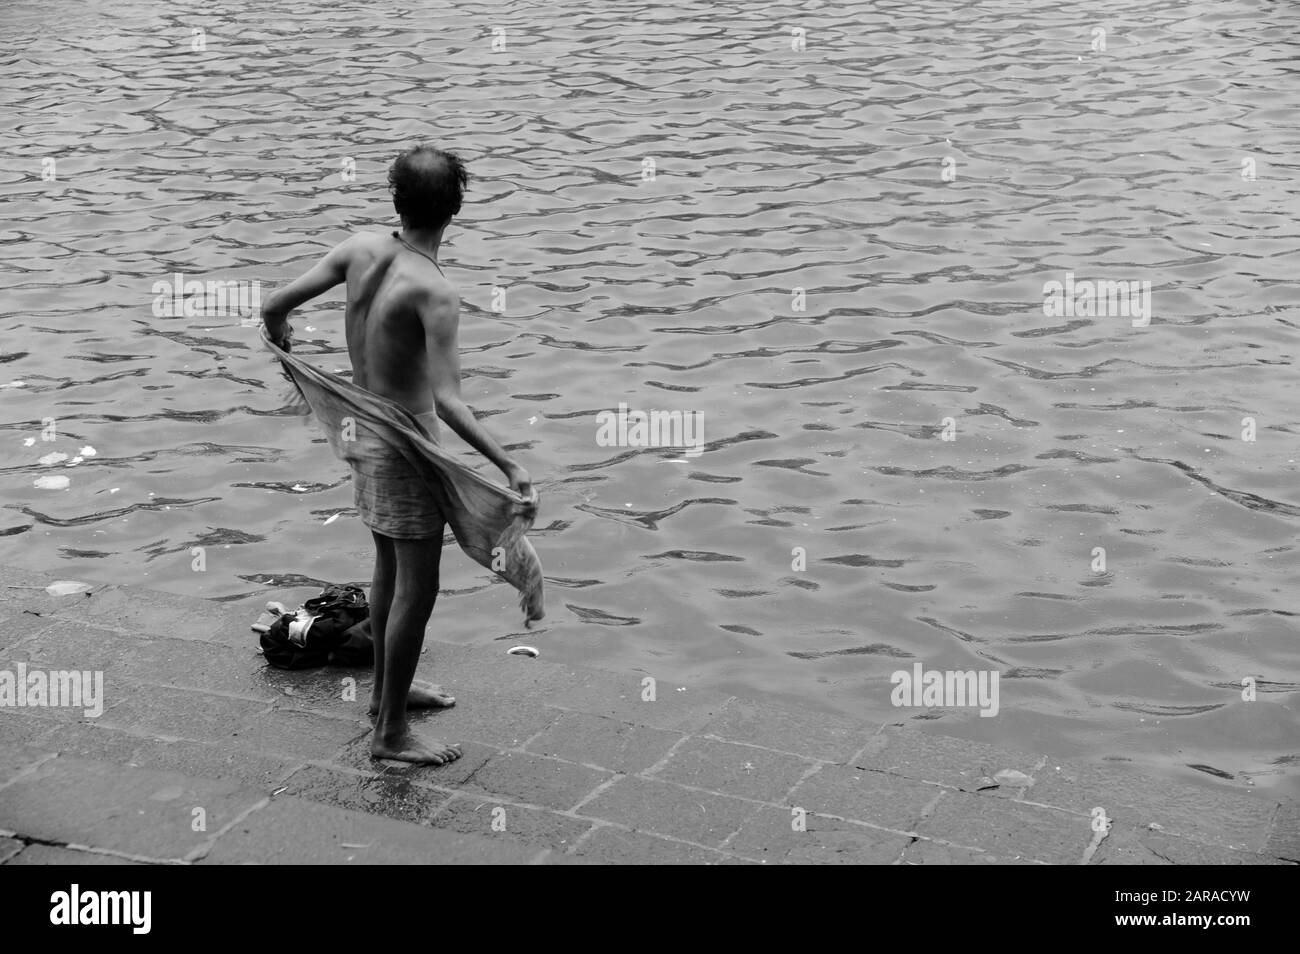 L'homme s'essuyant après le bain, réservoir d'eau Banganga, Walkeshwar, Malabar Hill, Mumbai, Maharashtra, Inde, Asie Banque D'Images